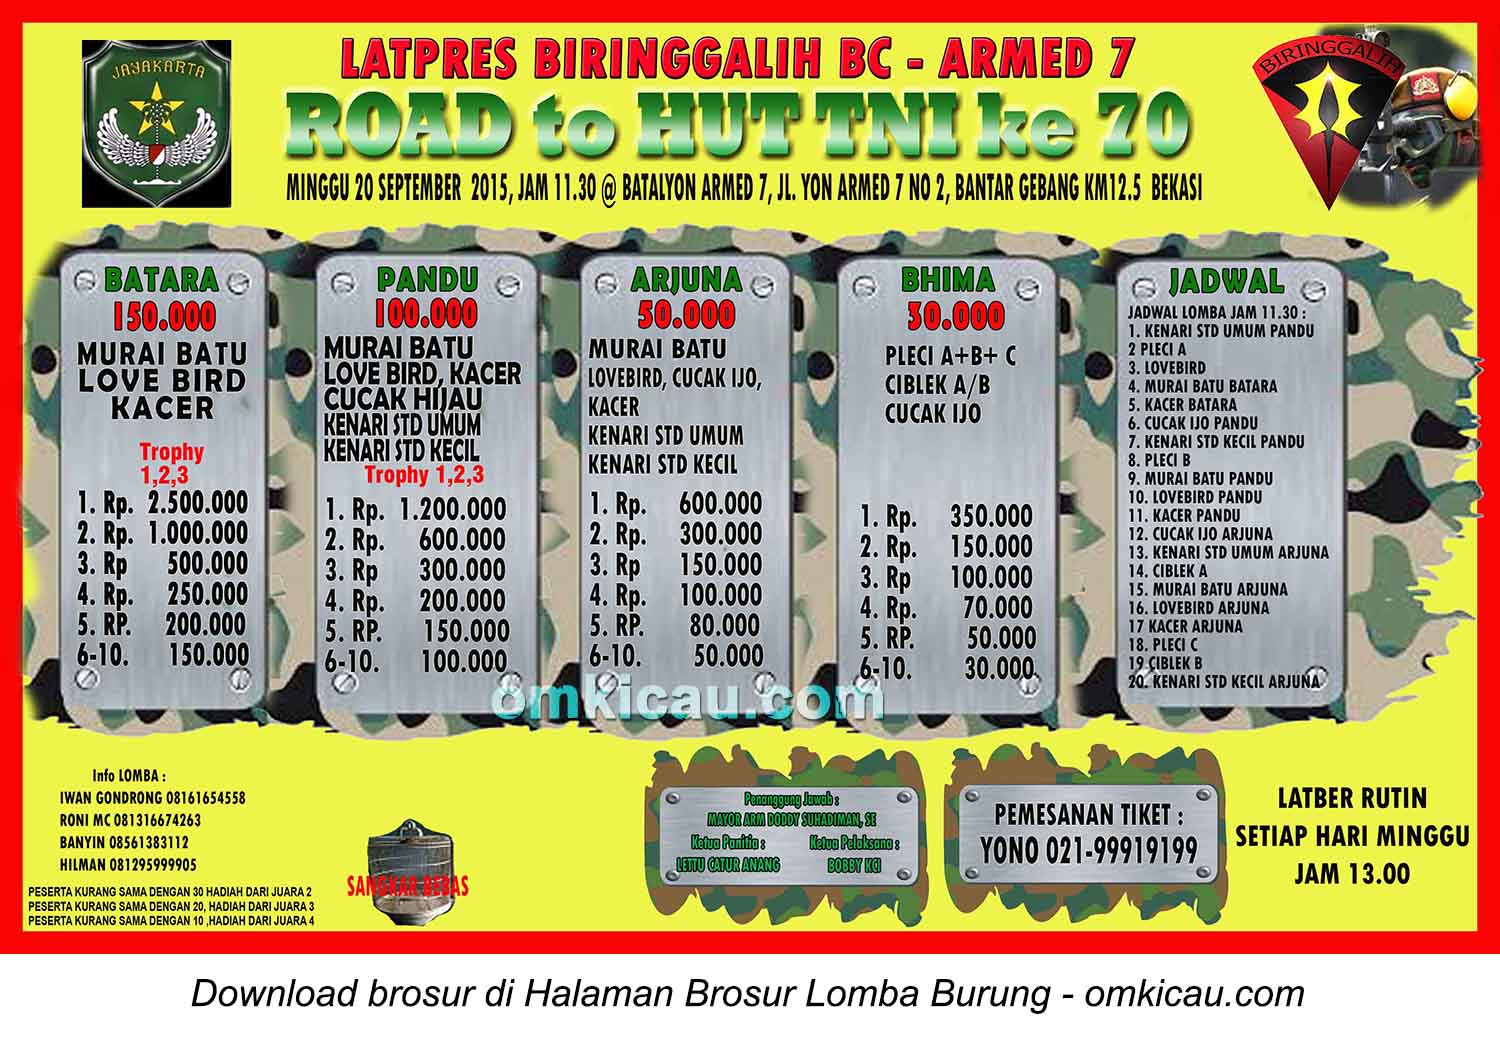 Brosor Latpres Biringgalih BC - Road to HUT TNI Ke-70, Bekasi, 20 September 2015